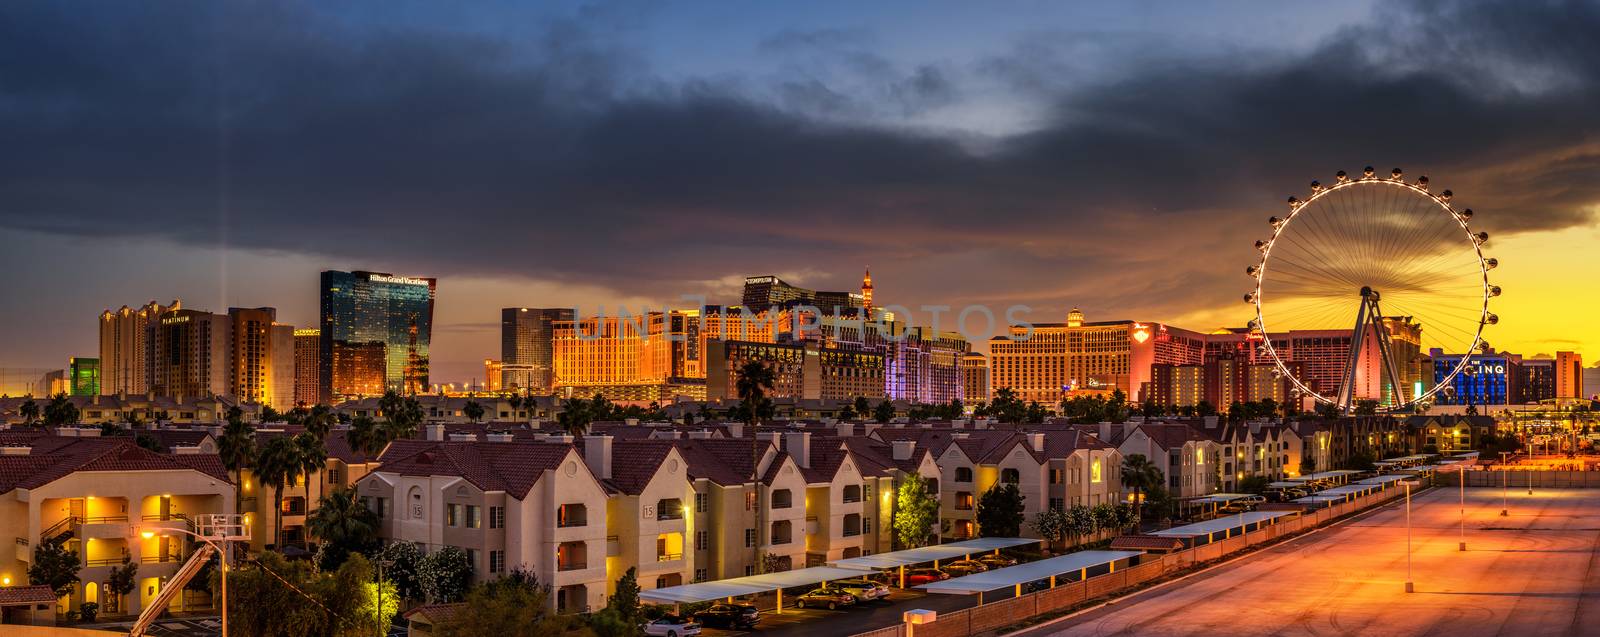 Sunset panorama above casinos on the Las Vegas Strip by nickfox